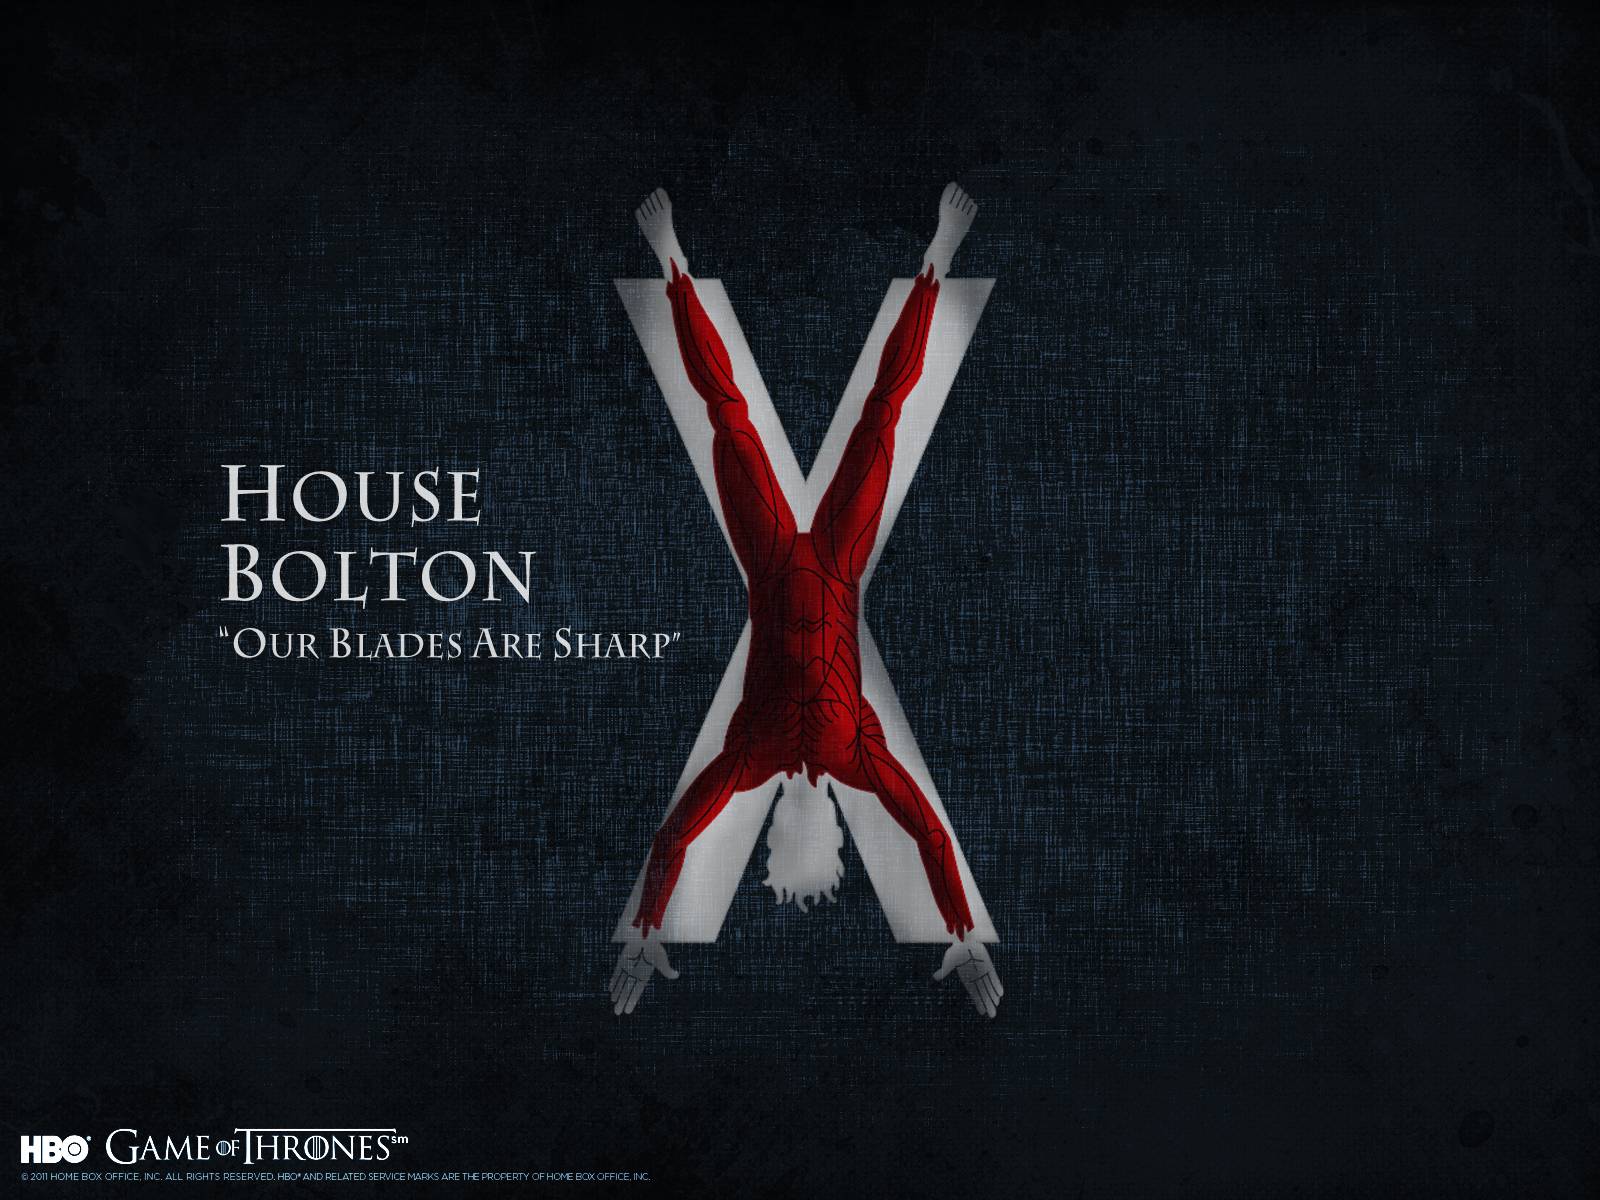 Bolton-släktens banderoll är så pass brutal att Joffrey hade börjat gråta av dess åsyn.